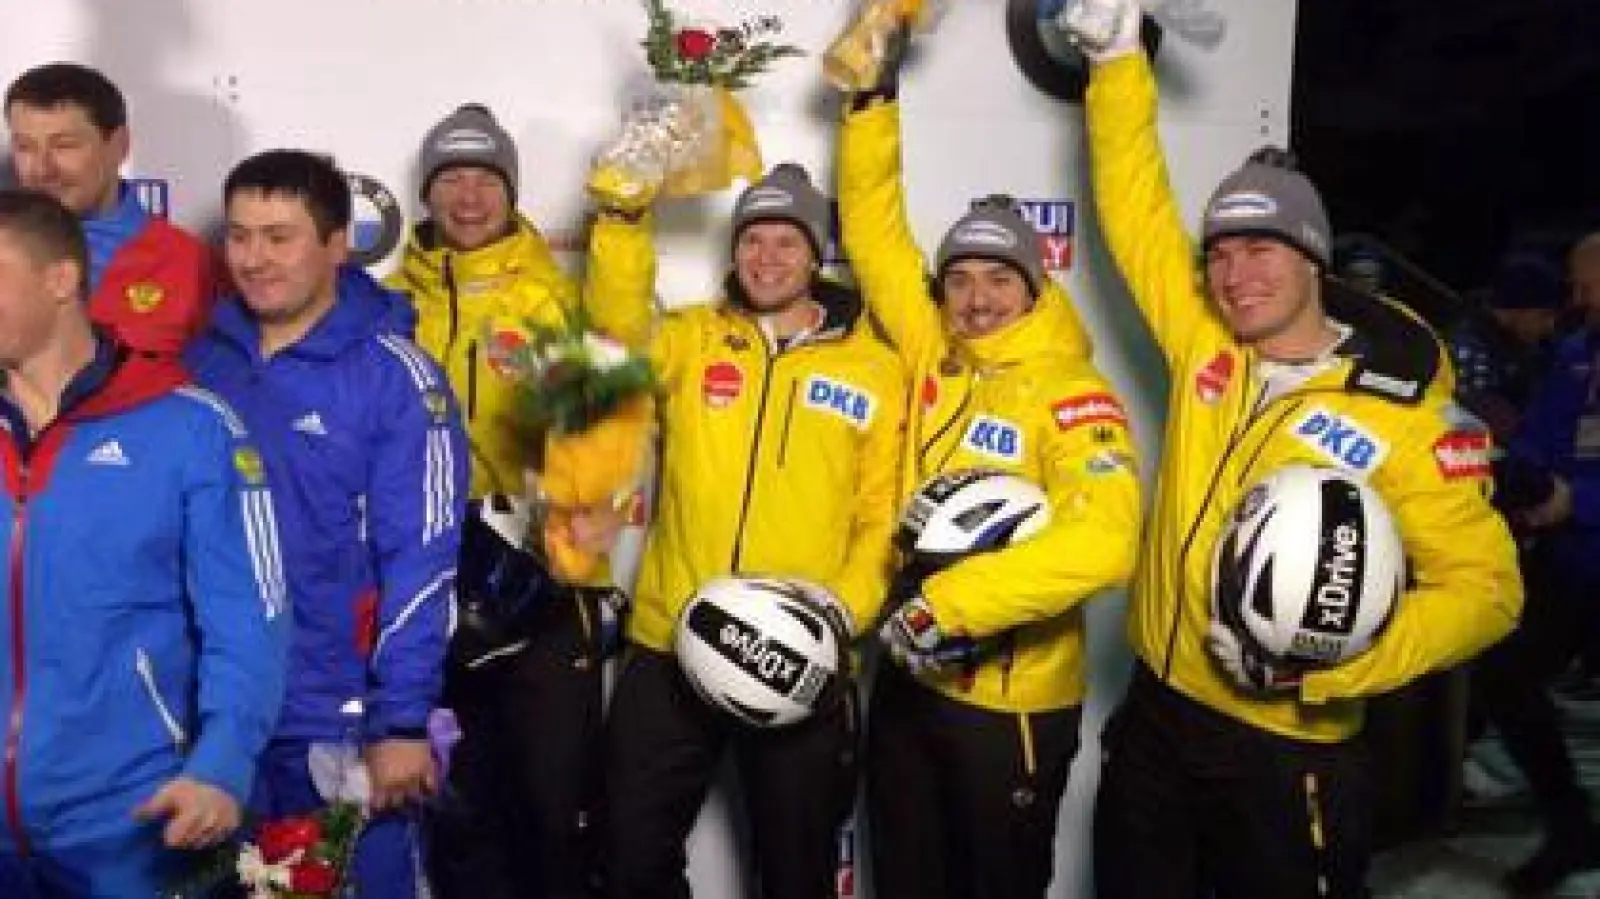 Matthias Kagerhuber   (von rechts) jubelt mit seinen Teamkollegen Christian Rasp, Sebastian Mwronka und Pilot Johannes Lochner über den dritten Platz beim Viererbob-Weltcup in Kanada.	Foto: privat (Foto: privat)